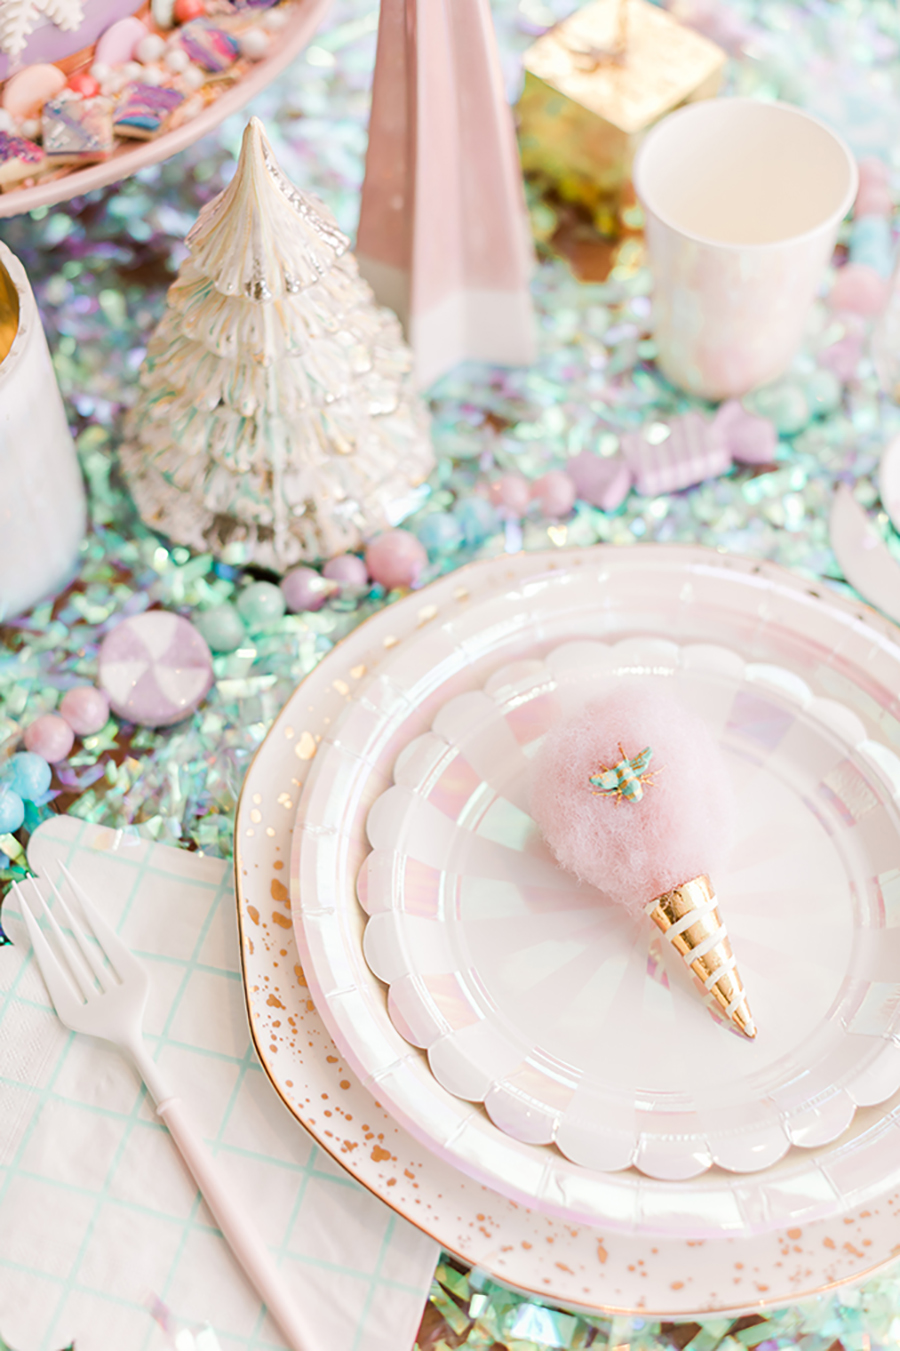 Agrega un toque romántico de Navidad a tu mesa para la cena de Noche Buena, como en la fotografía con platos colores pasteles y muchos adornos.